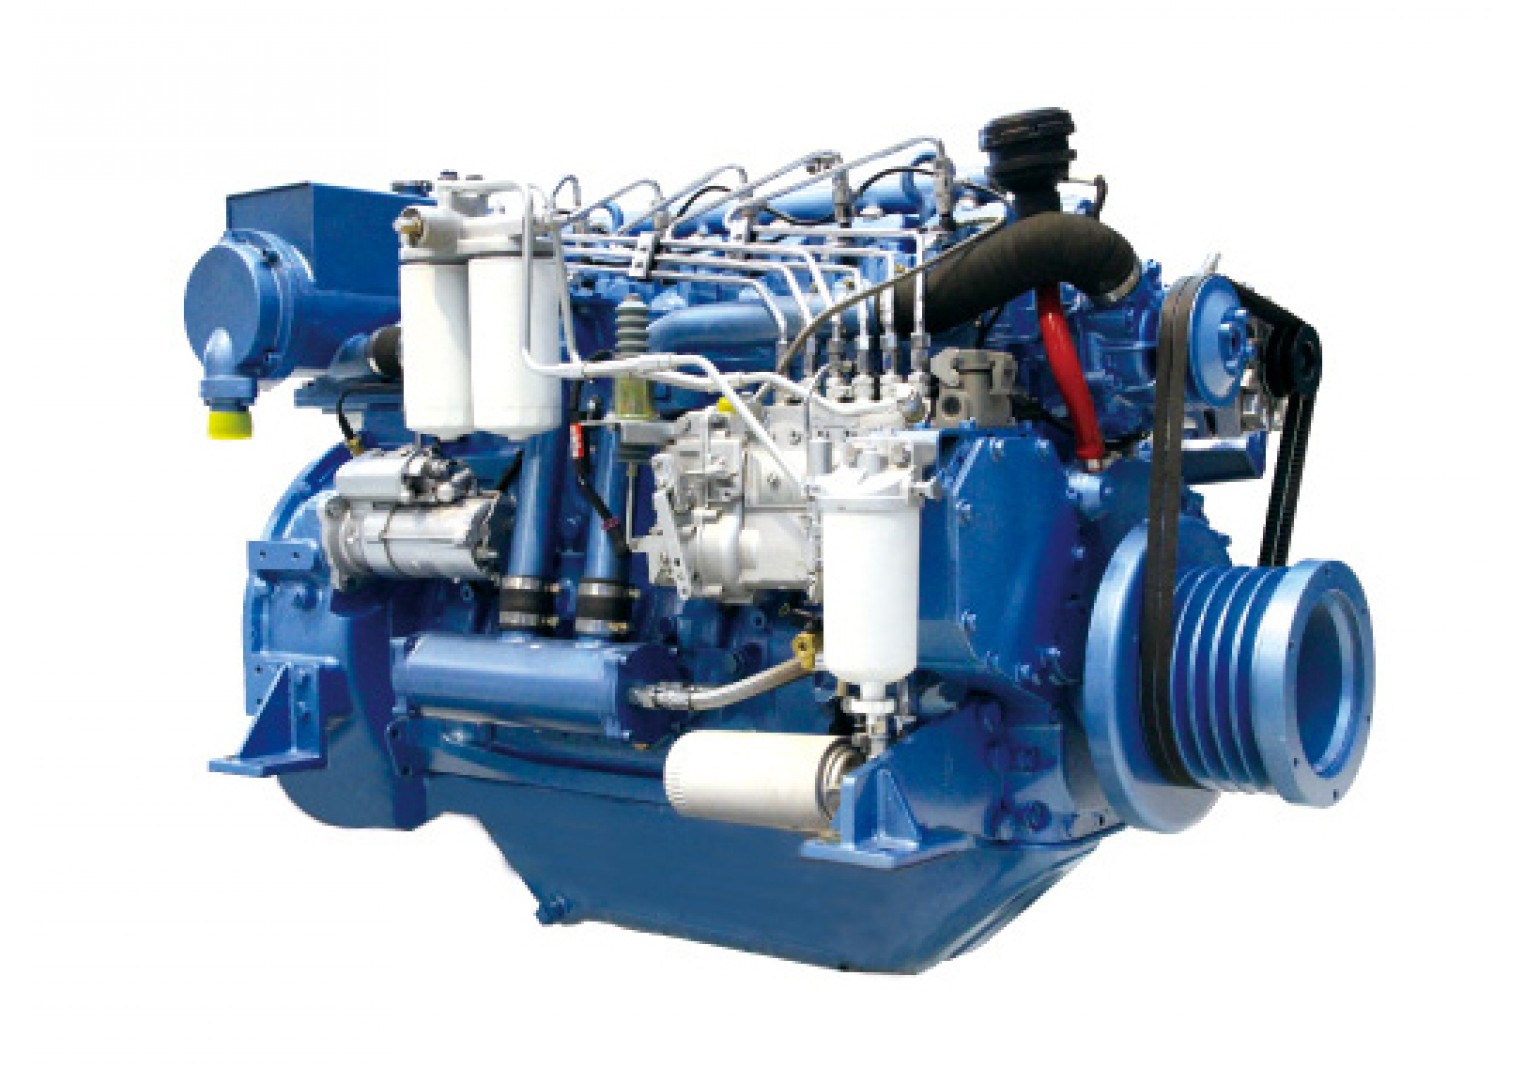 Marine Diesel Engine WP6C220-23